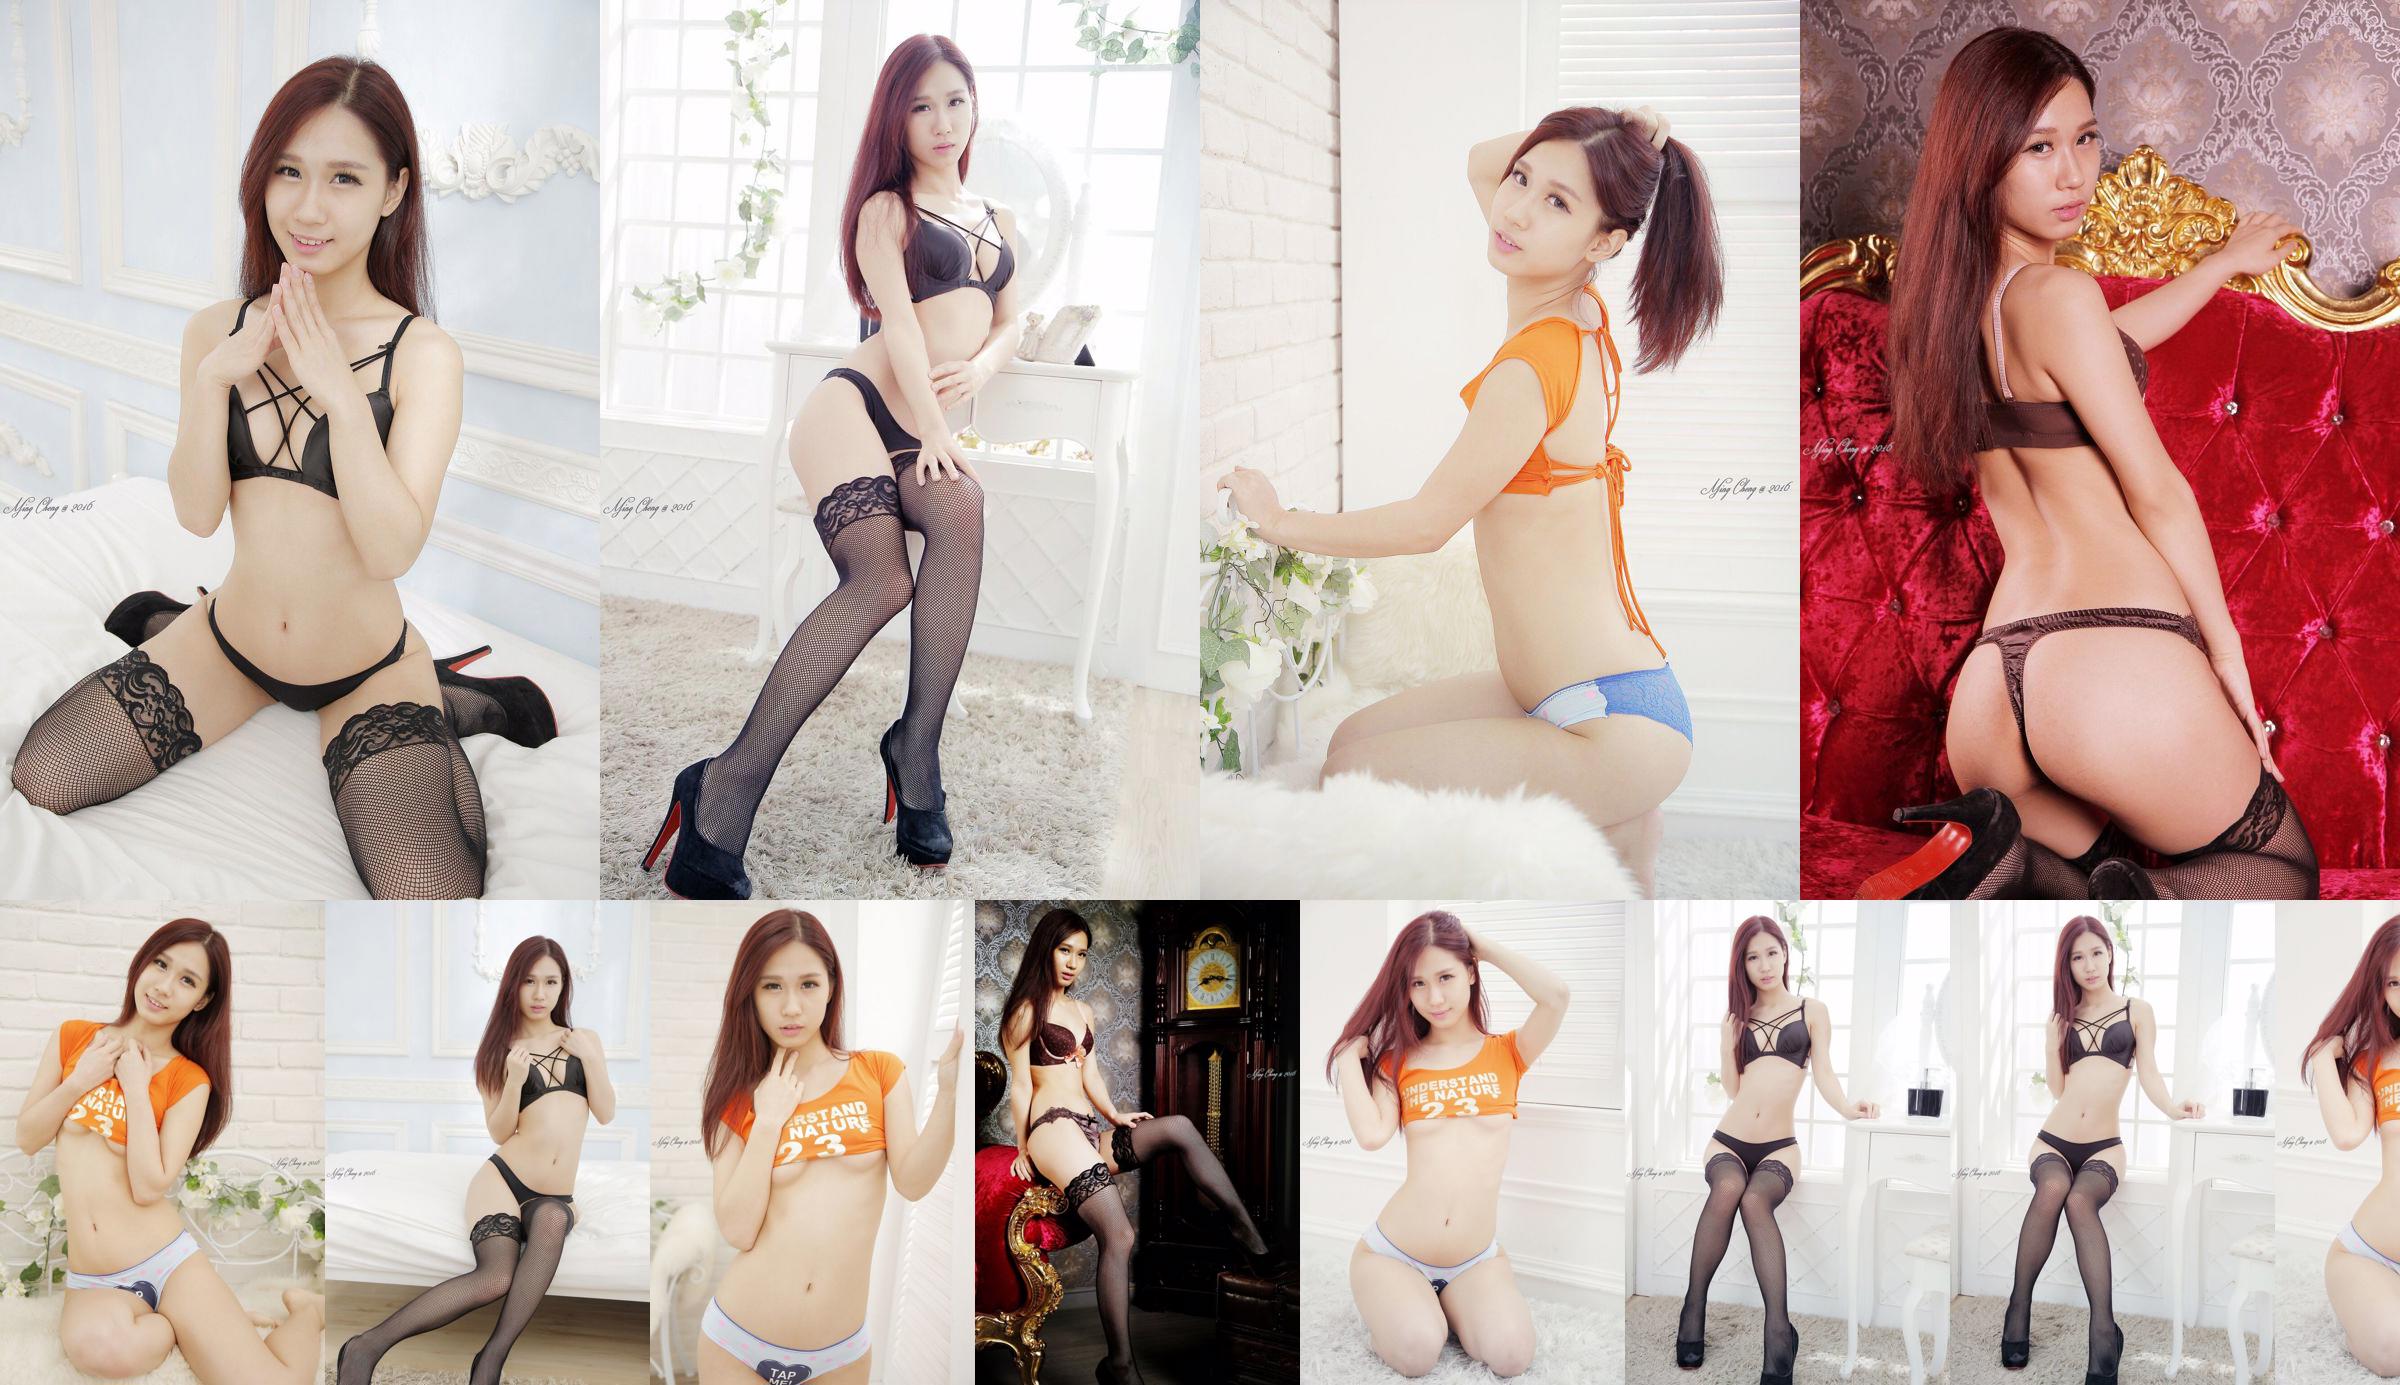 [Taiwan Zhengmei] Belle underwear studio shooting No.b7a543 Page 13